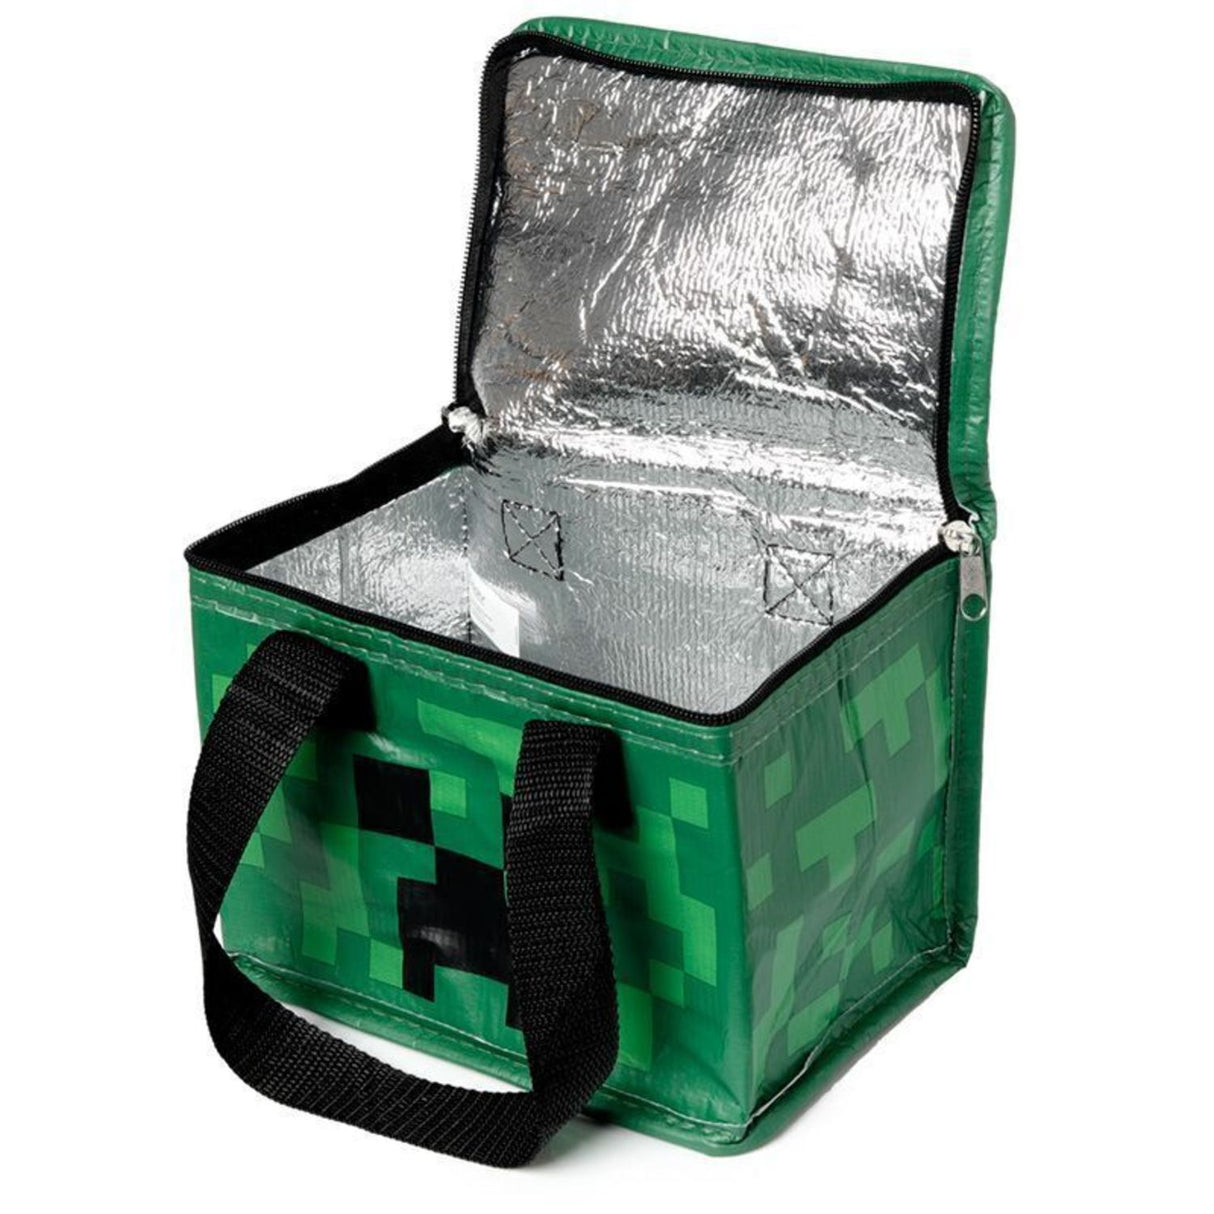 Minecraft Creeper Kühltasche aus recycelten Plastikflaschen